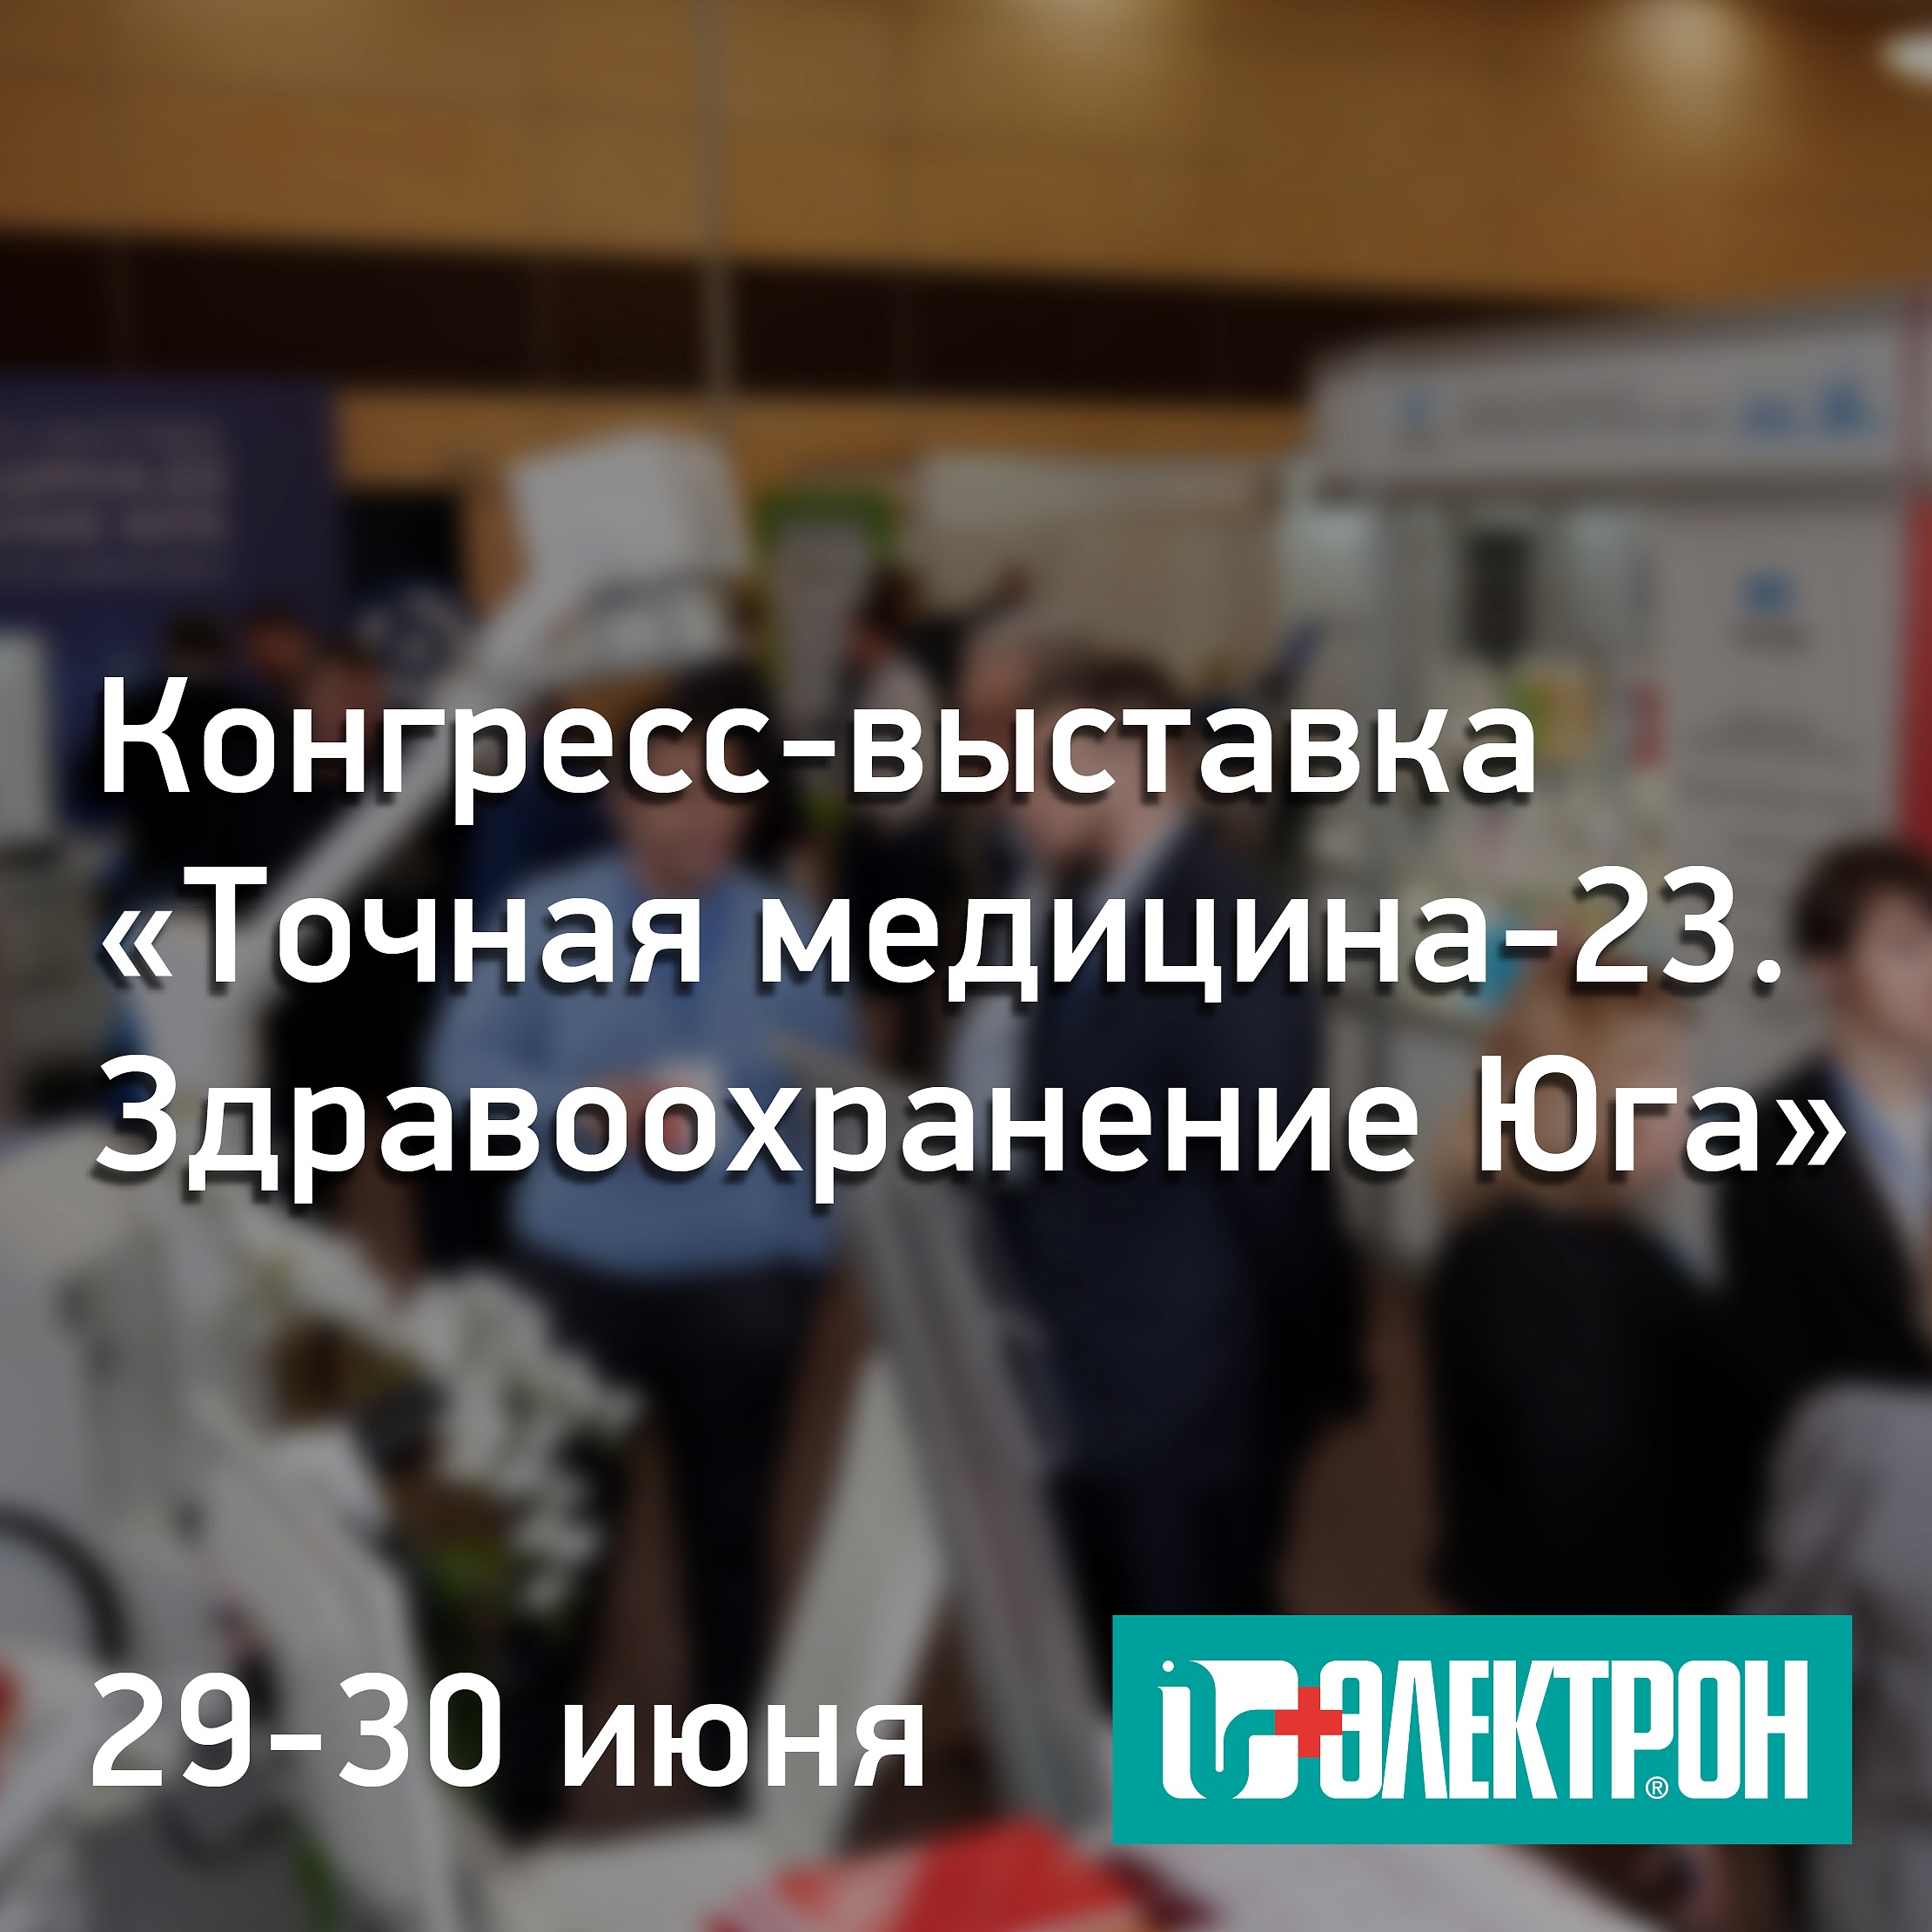  Приглашаем на выставку «Точная медицина-23. Здравоохранение Юга» в Кисловодске